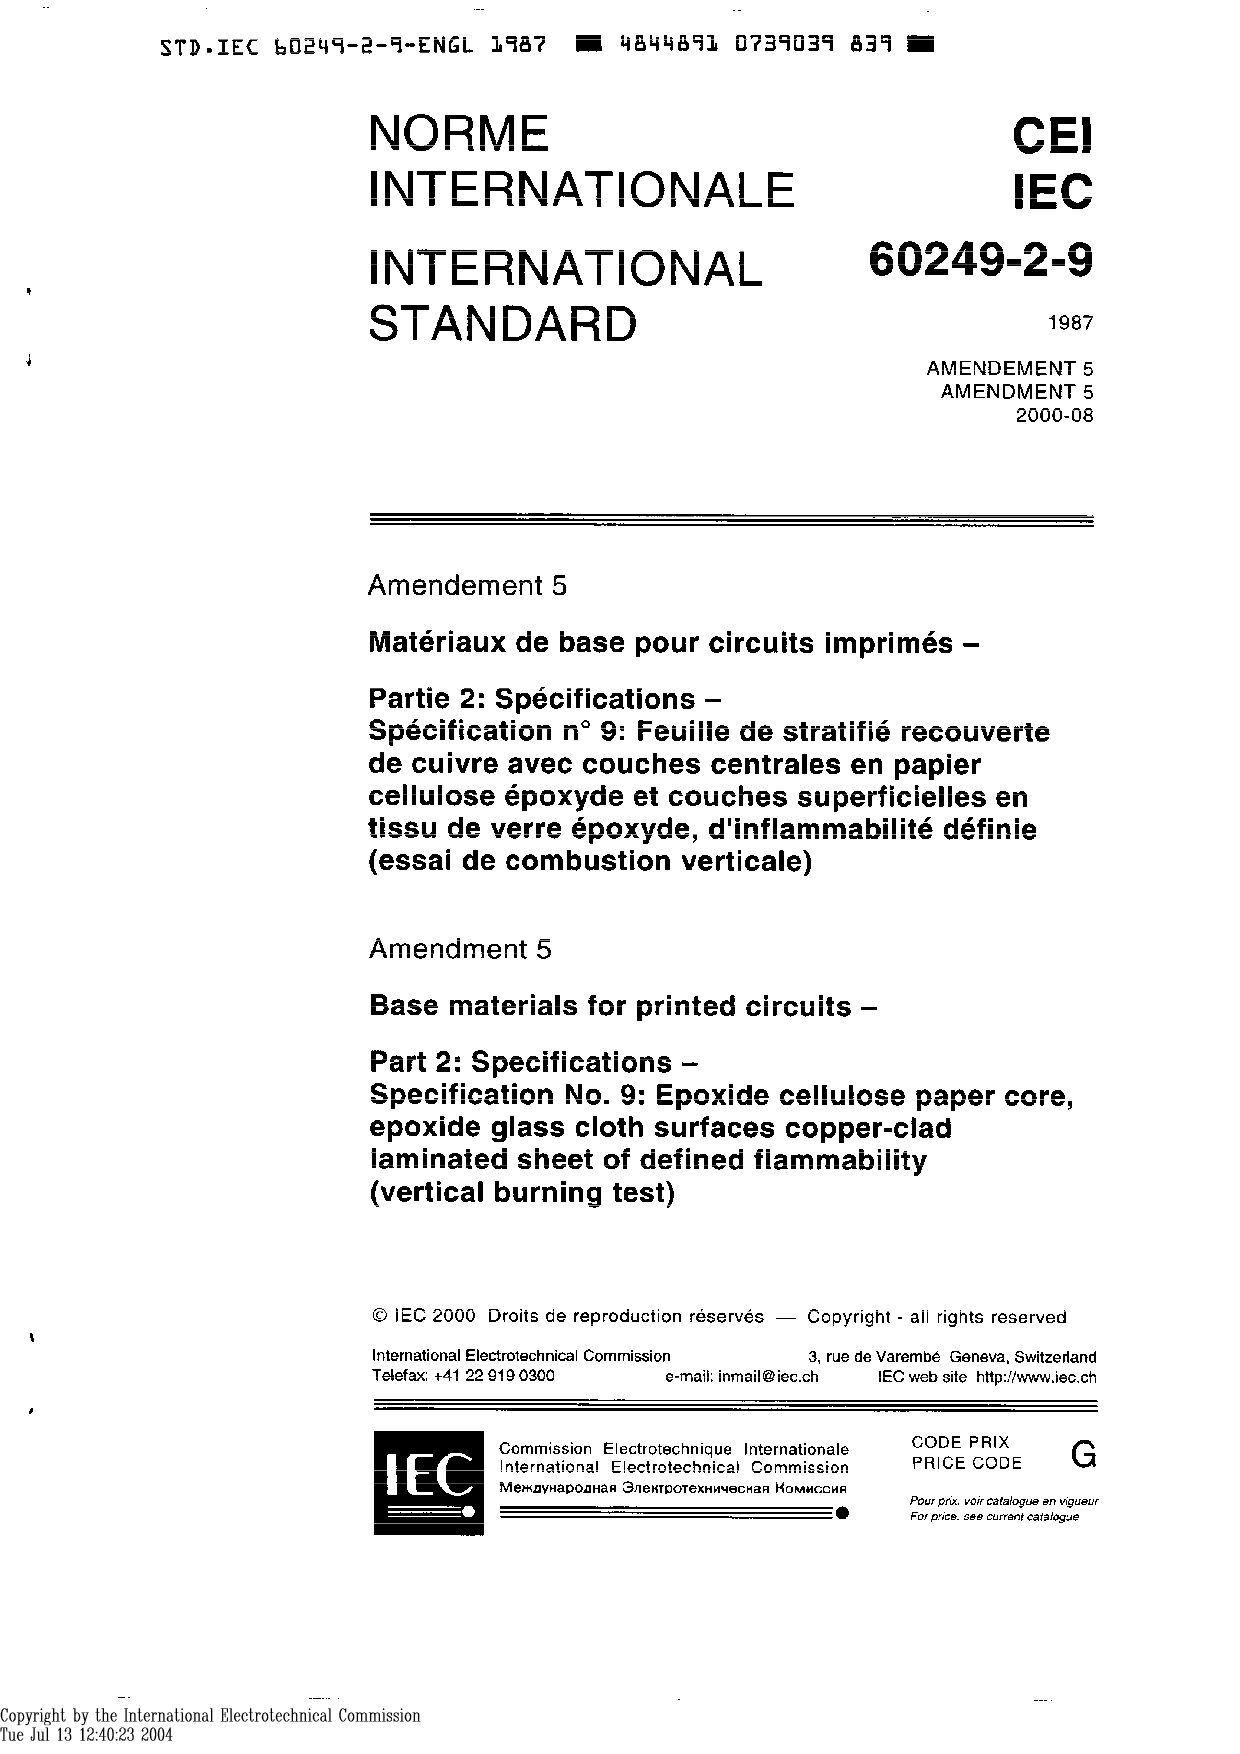 IEC 60249-2-9:1987